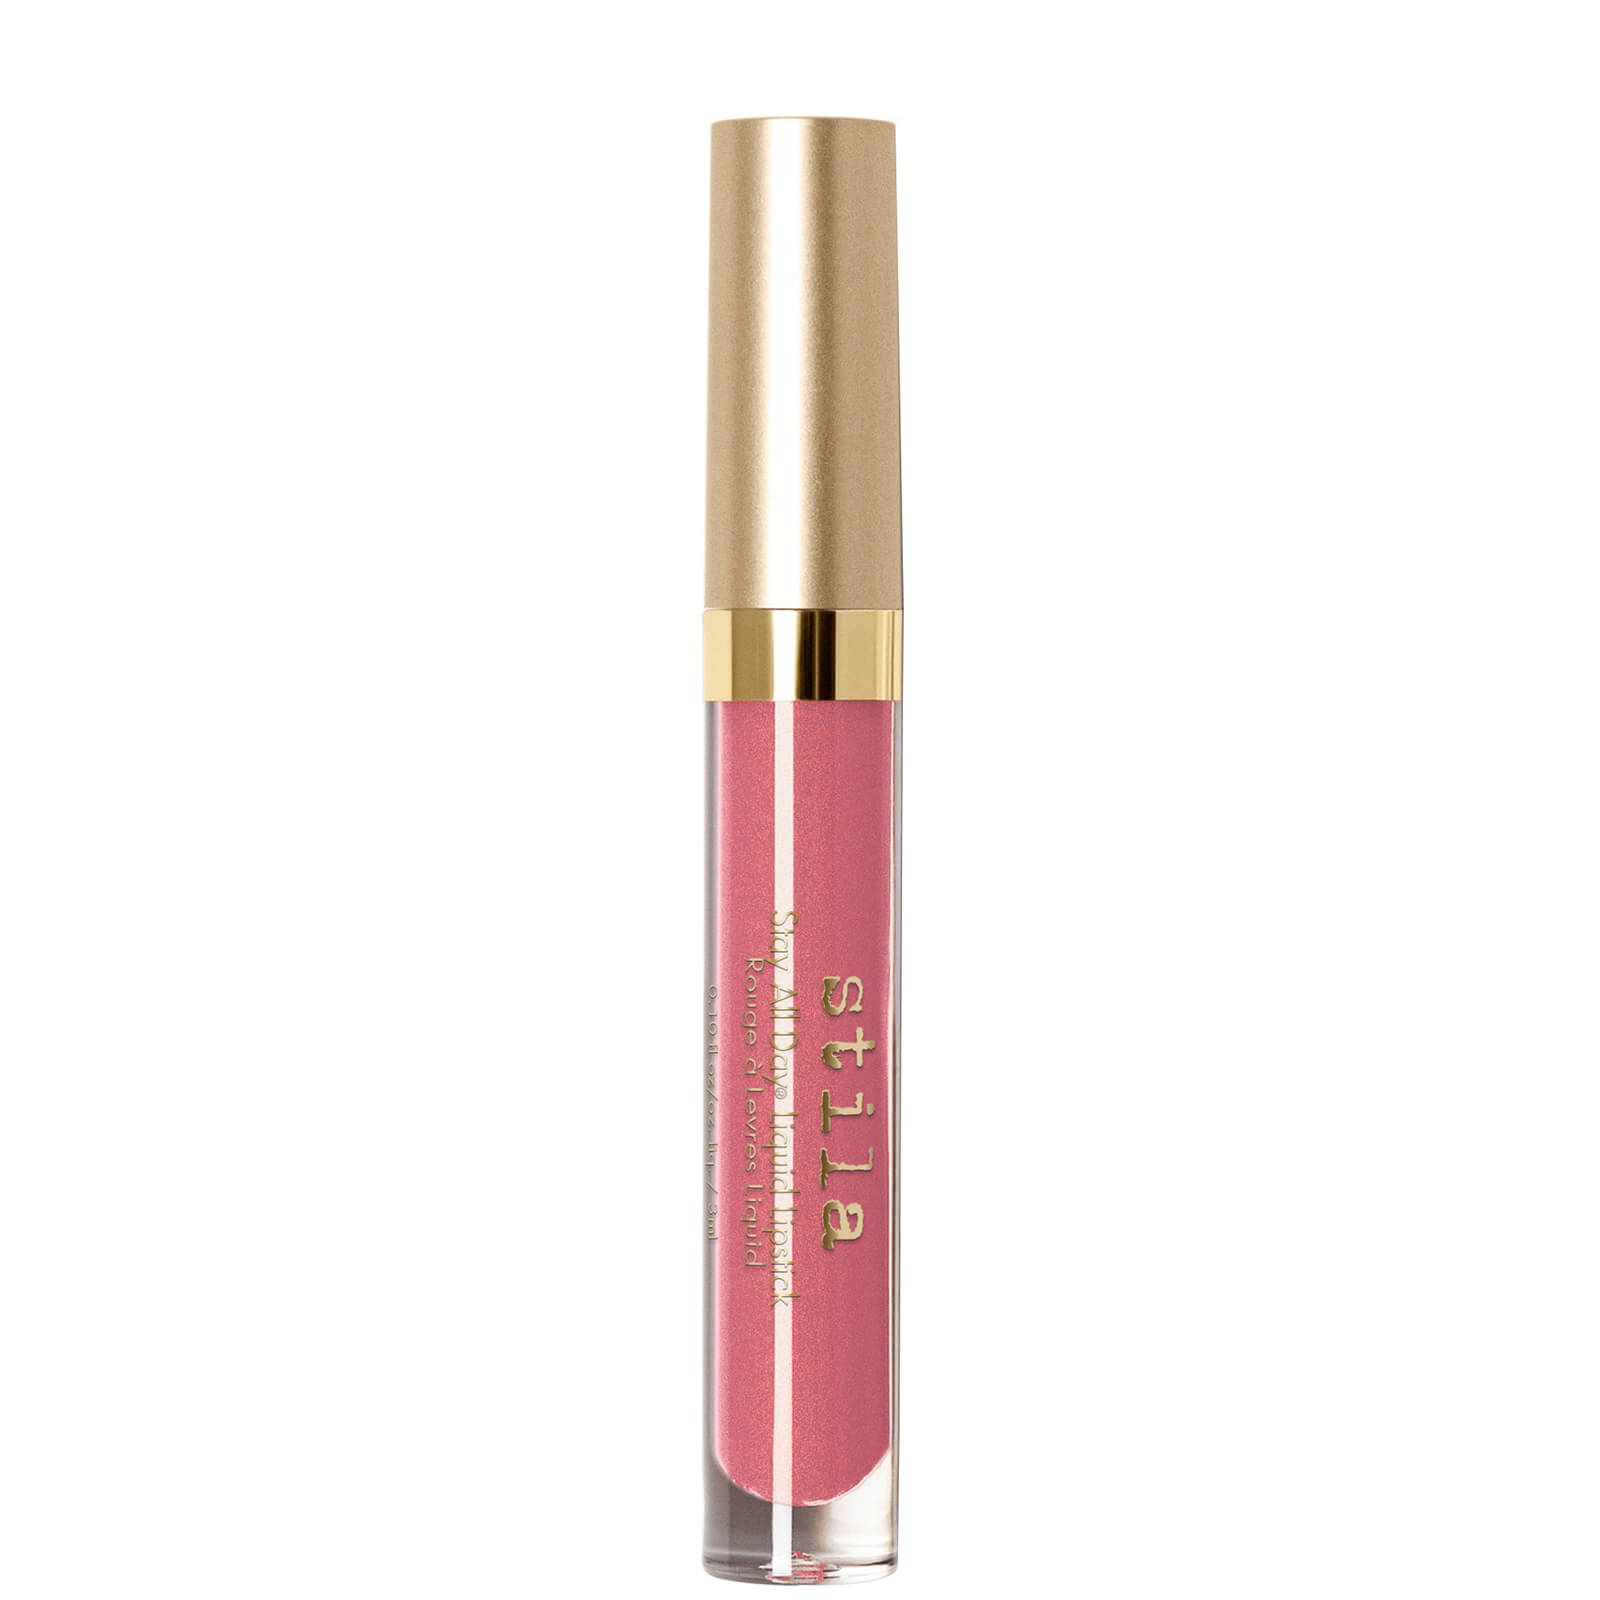 Stila Liquid Lipstick - Patina Shimmer